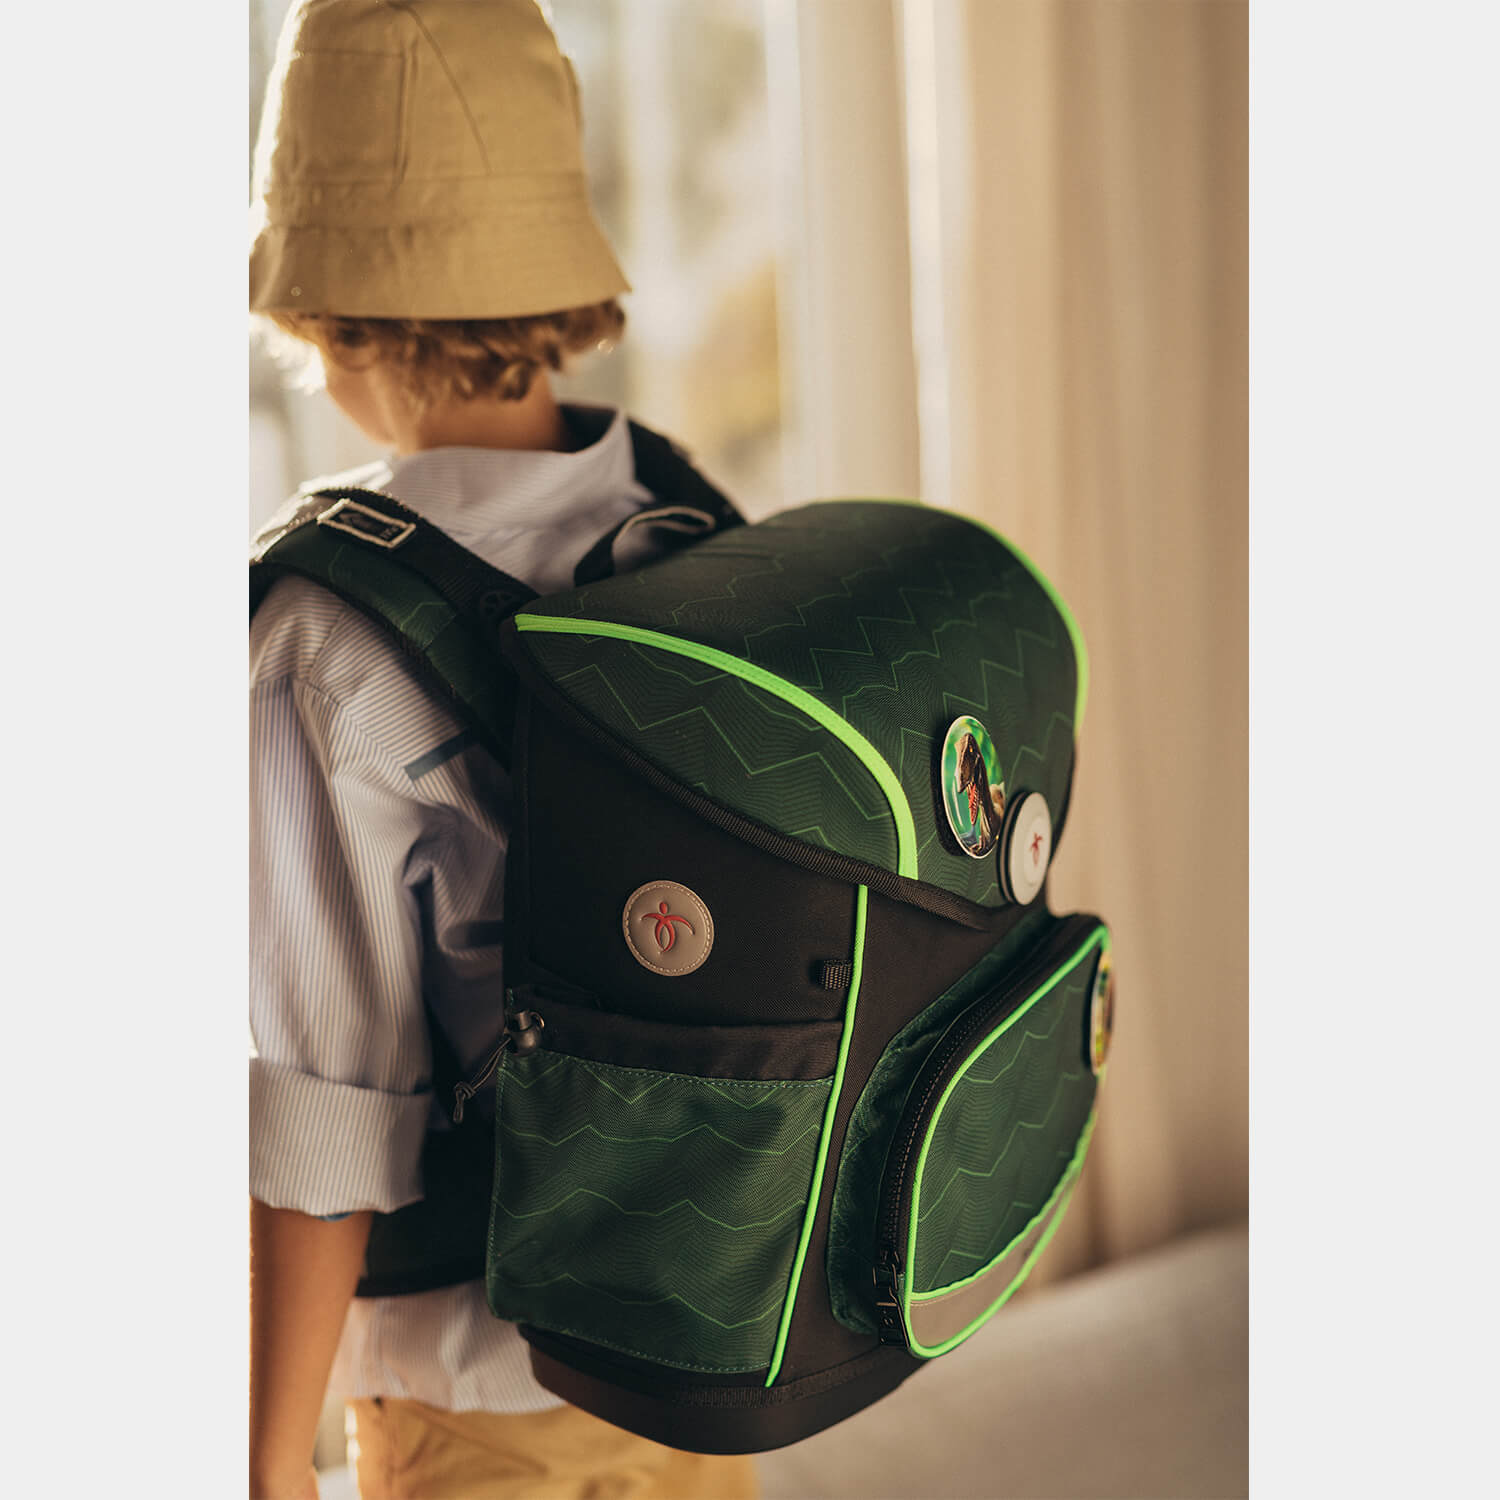 Compact Plus Twist of Lime Schoolbag set 5pcs.